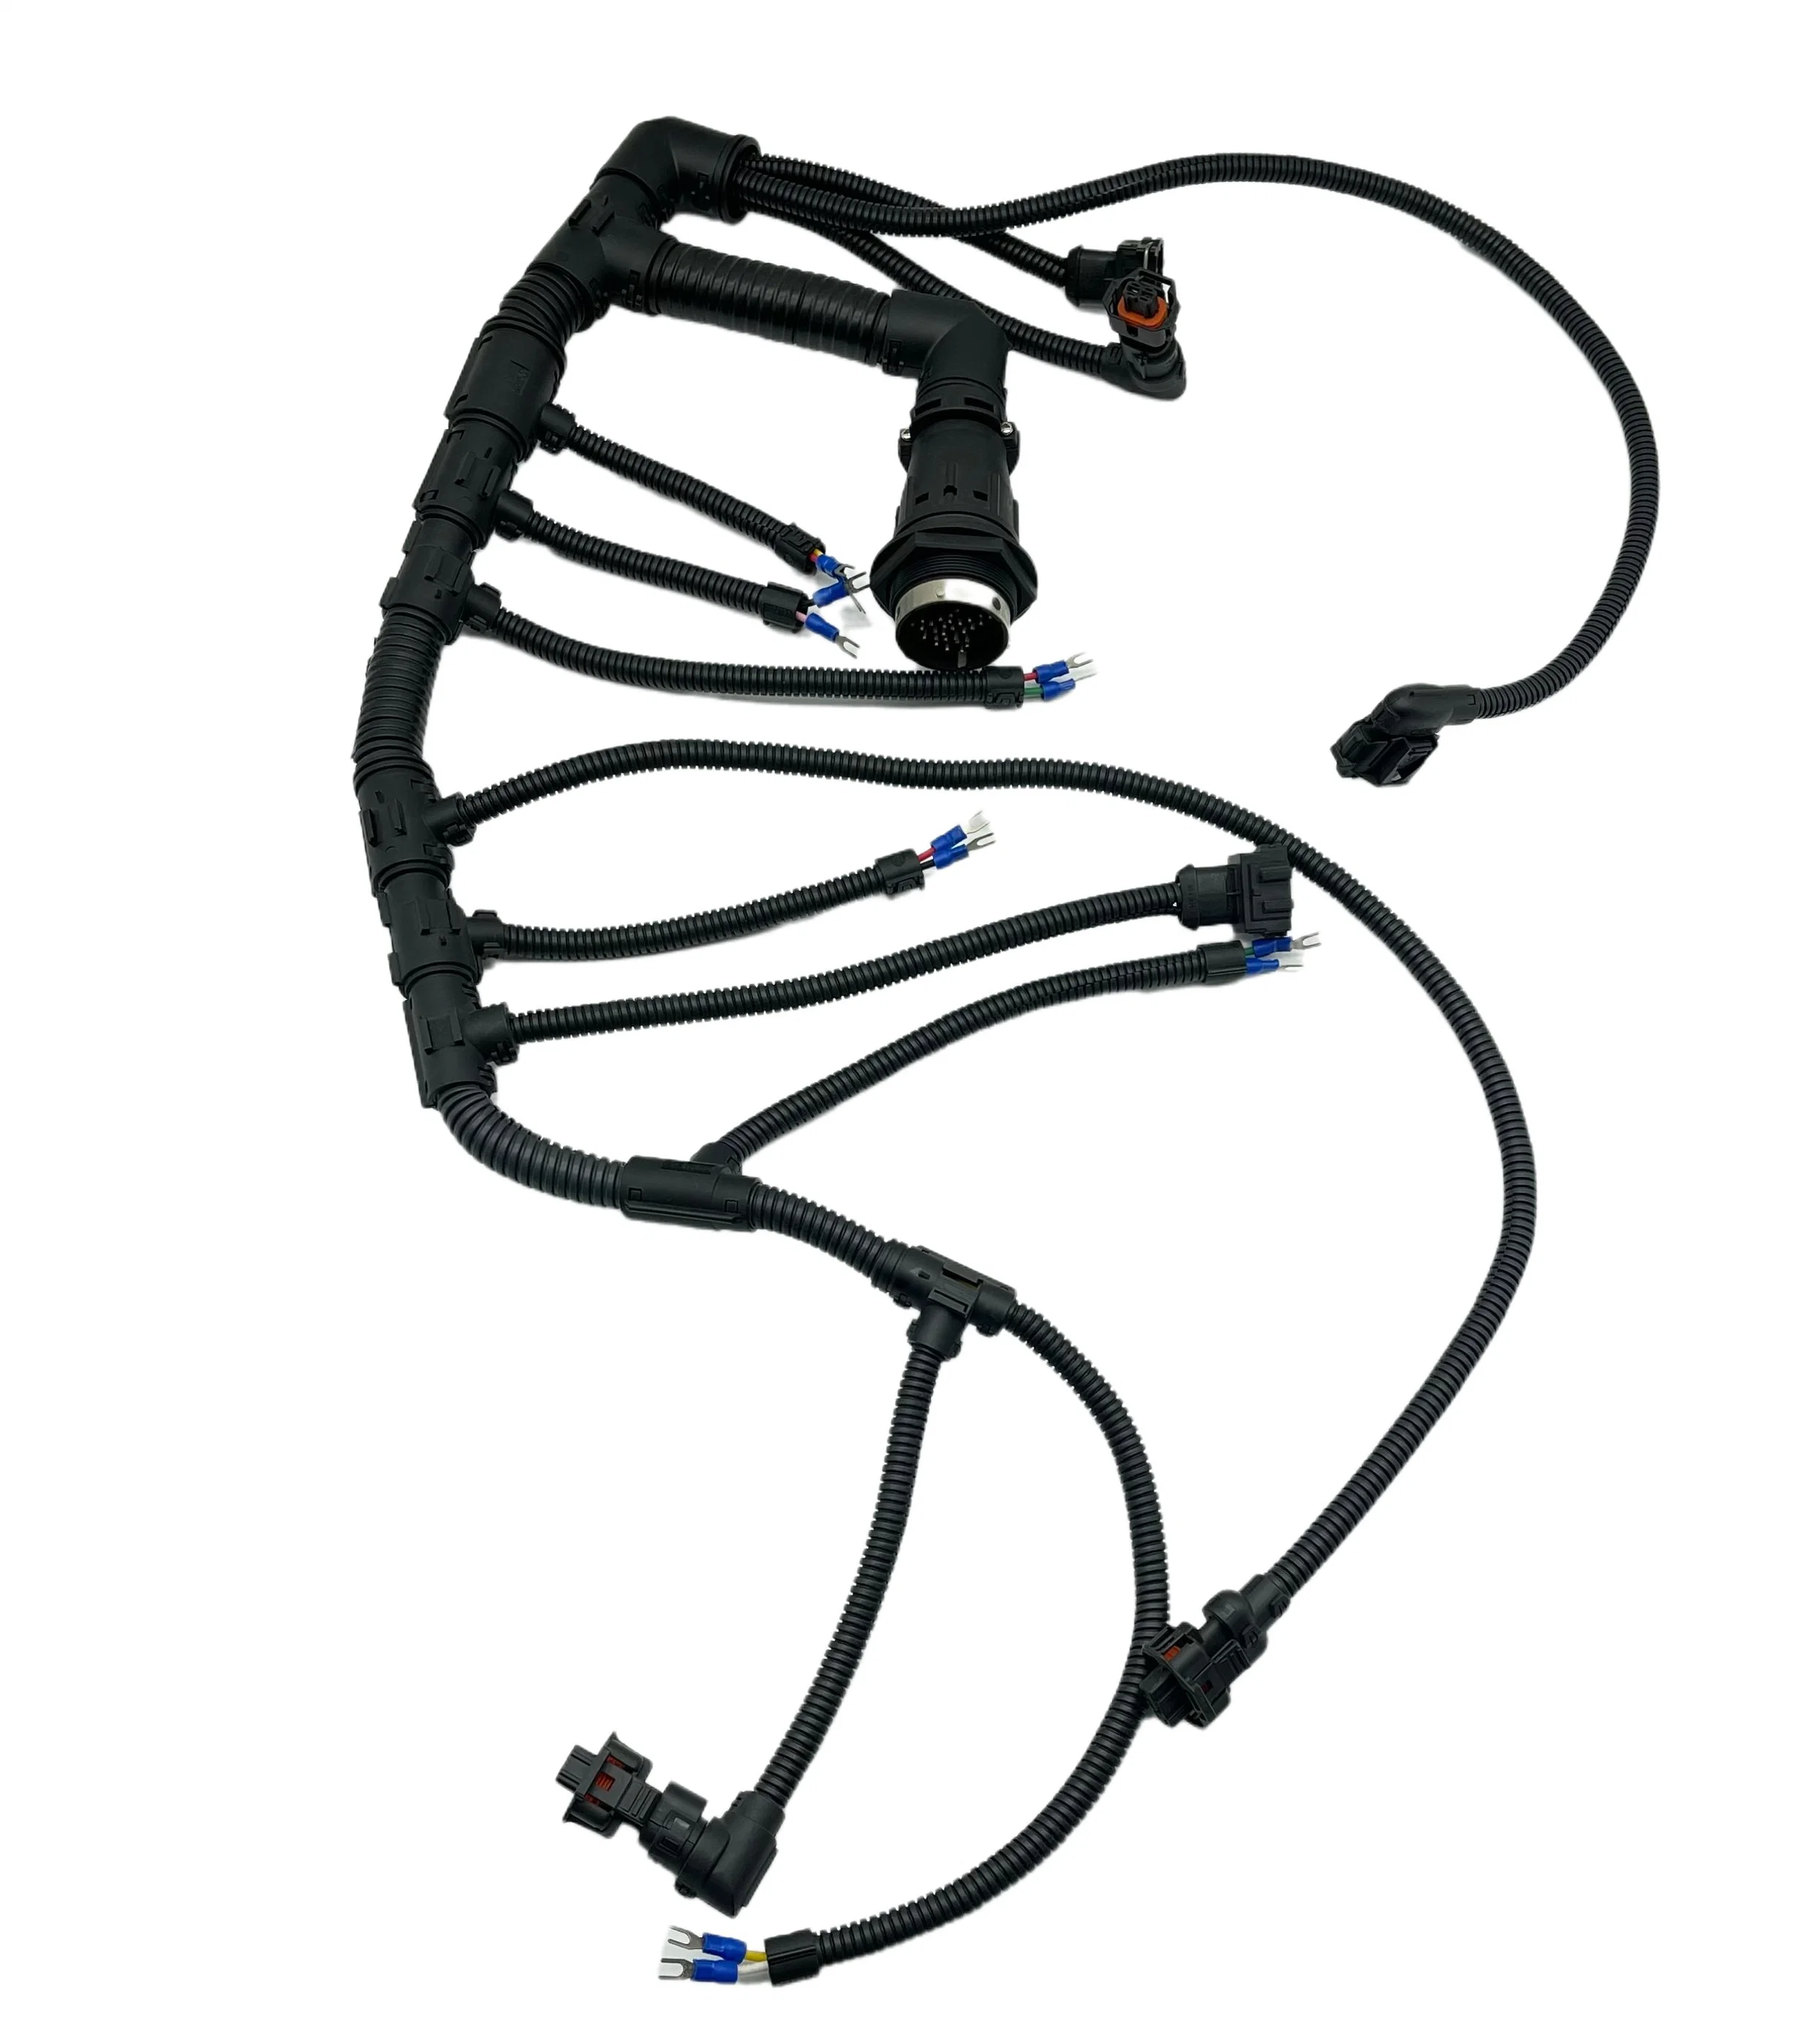 Assemblage de câbles de faisceau de fils électroniques personnalisés pour le câblage de l'appareil ménager automobile.